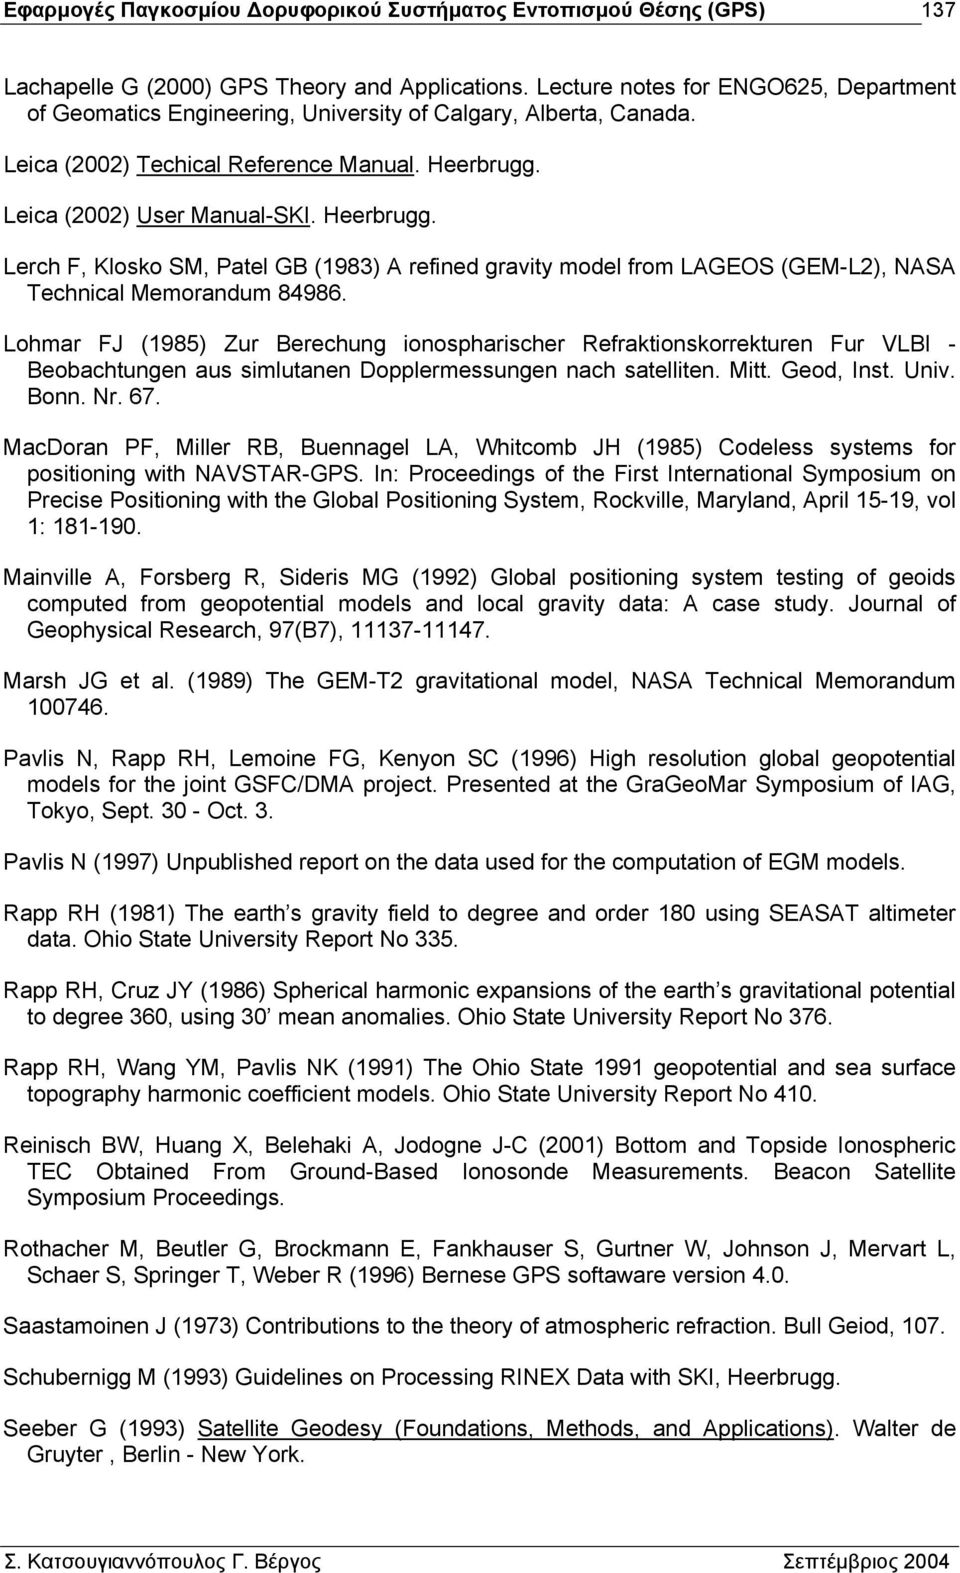 Lohmar FJ (1985) Zur Berechung ionospharischer Refraktionskorrekturen Fur VLBI - Beobachtungen aus simlutanen Dopplermessungen nach satelliten. Mitt. Geod, Inst. Univ. Bonn. Nr. 67.